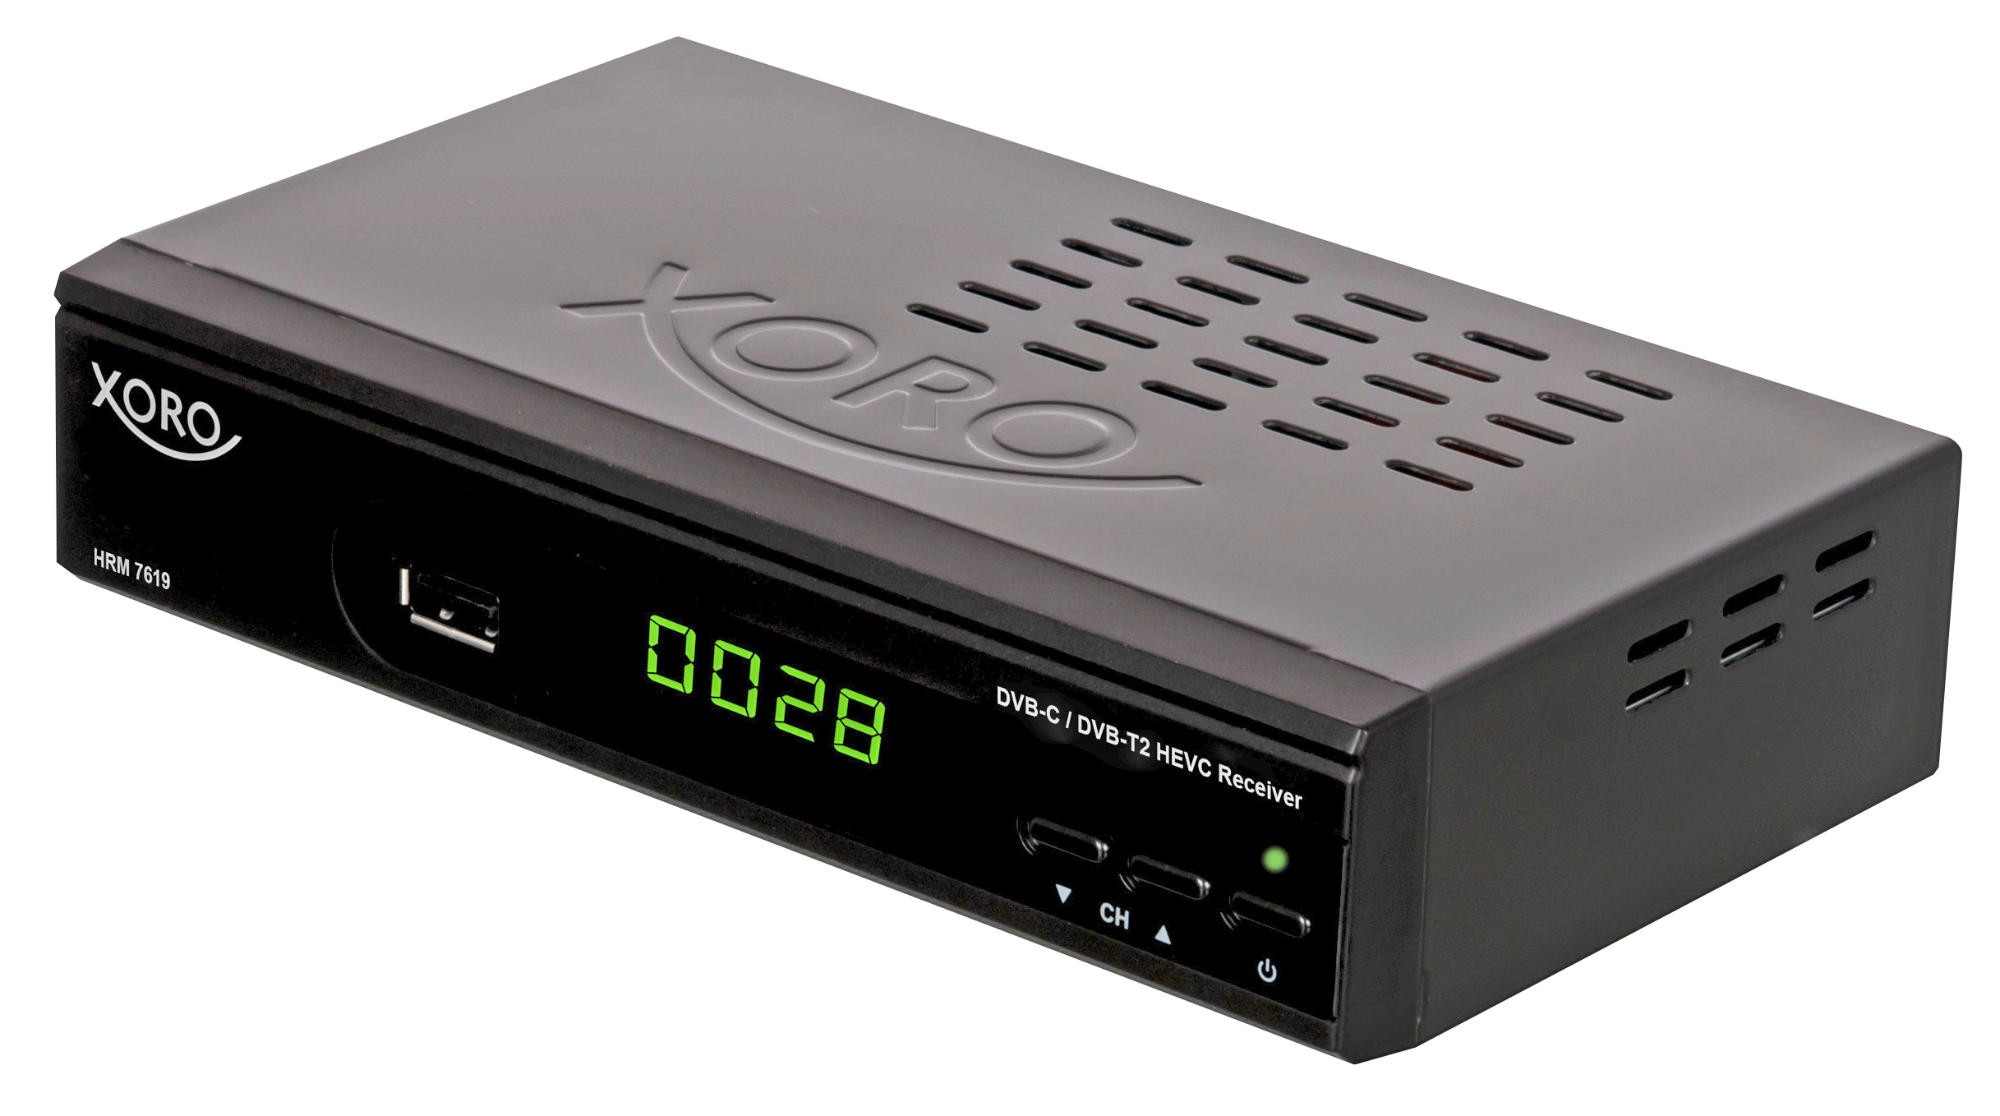 HRM HD DVB-C, DVB-C2/T2 (HDTV, DVB-C2, 7619 HD, XORO DVB-T2 Schwarz) Receiver